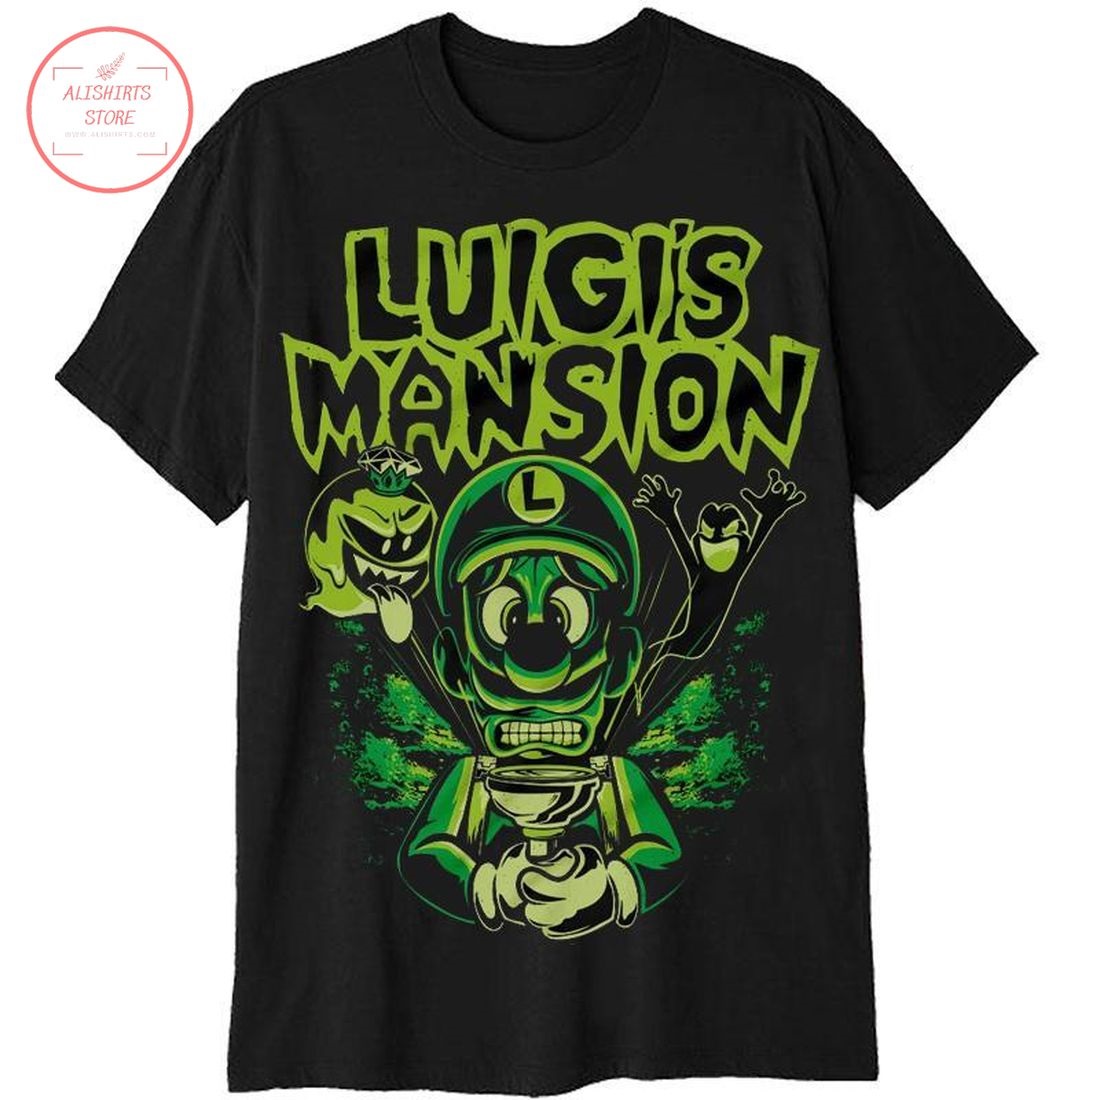 Super Mario Luigi’s Mansion Shirt